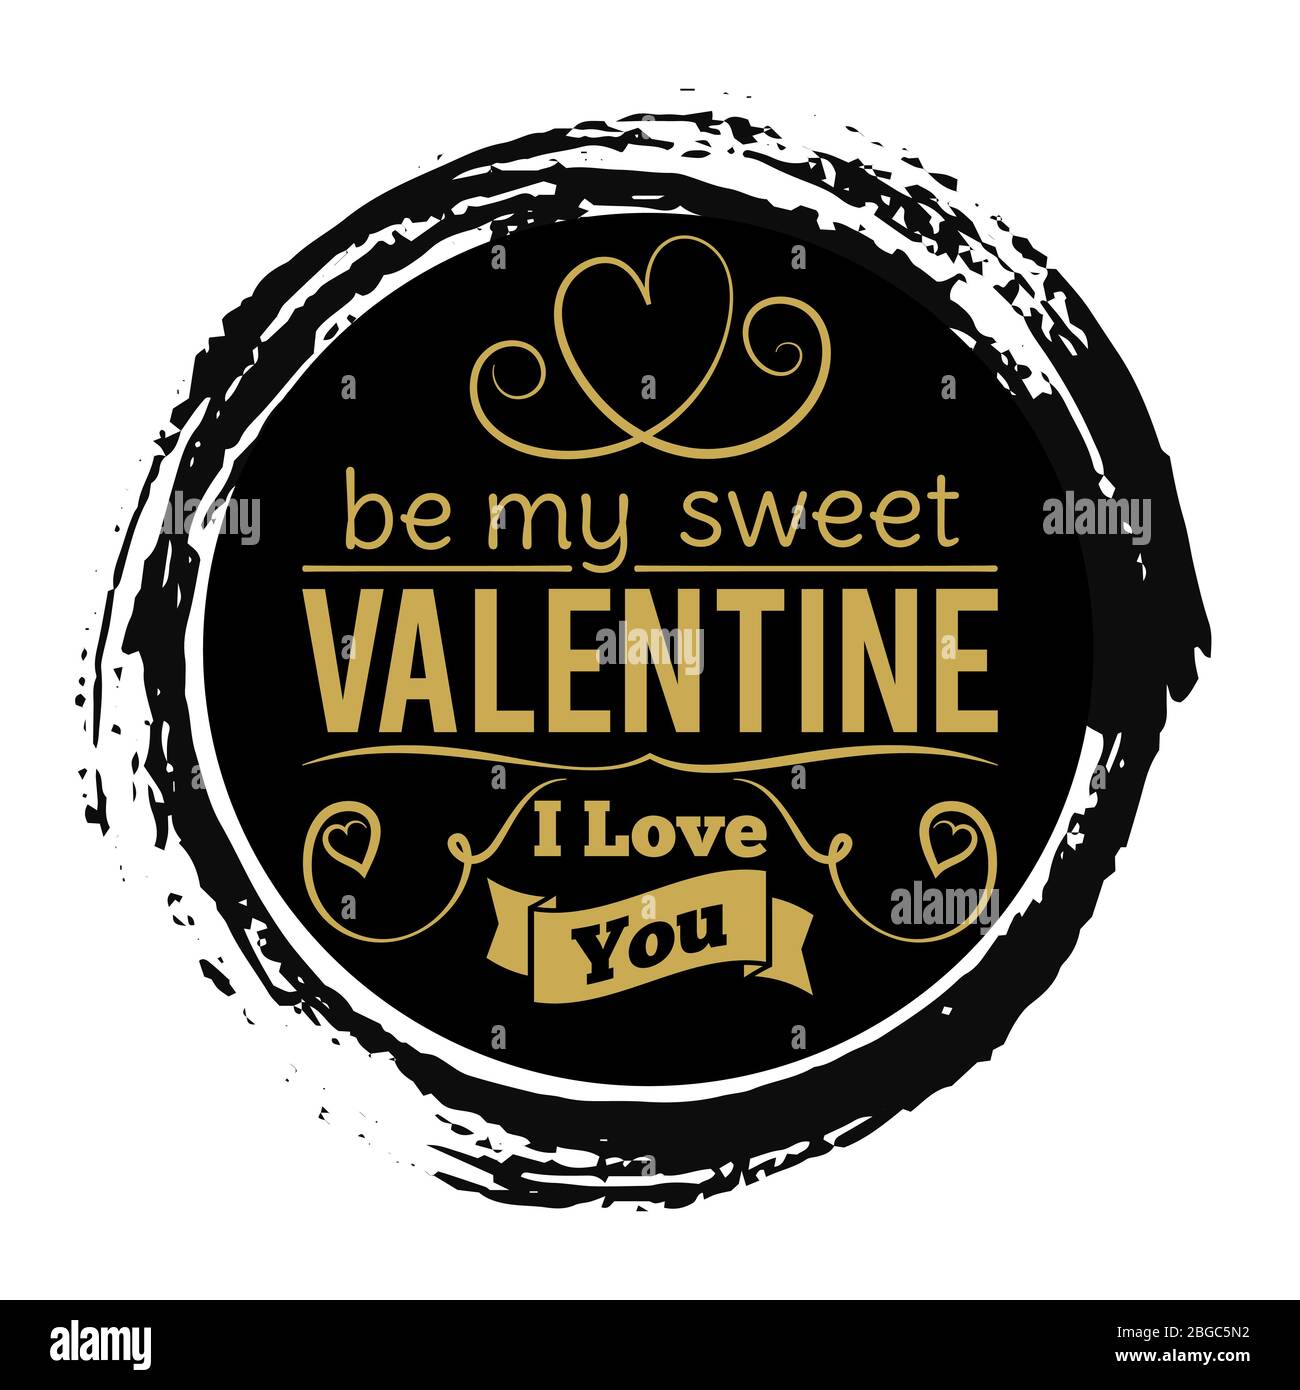 Süßes Valentinstag-Goldbanner auf schwarzer Grunge-Kulisse - Vintage Love Stamp Design. Stempel valentinstag Urlaub, Liebe und romantisch. Vektorgrafik Stock Vektor